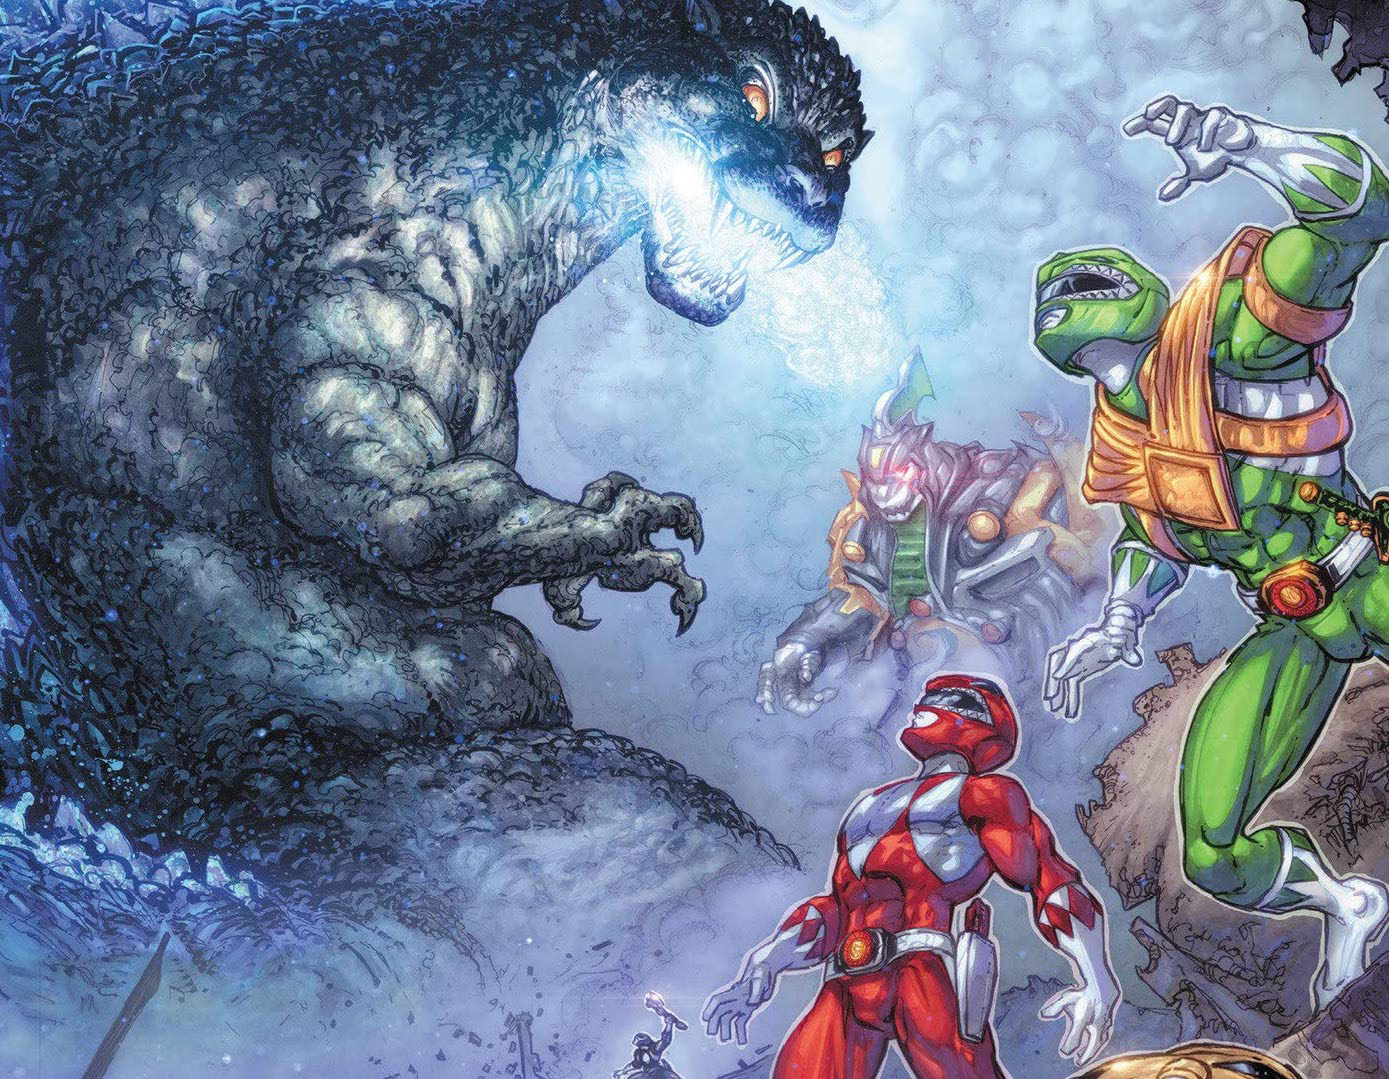 Godzilla vs. the Mighty Morphin Power Rangers